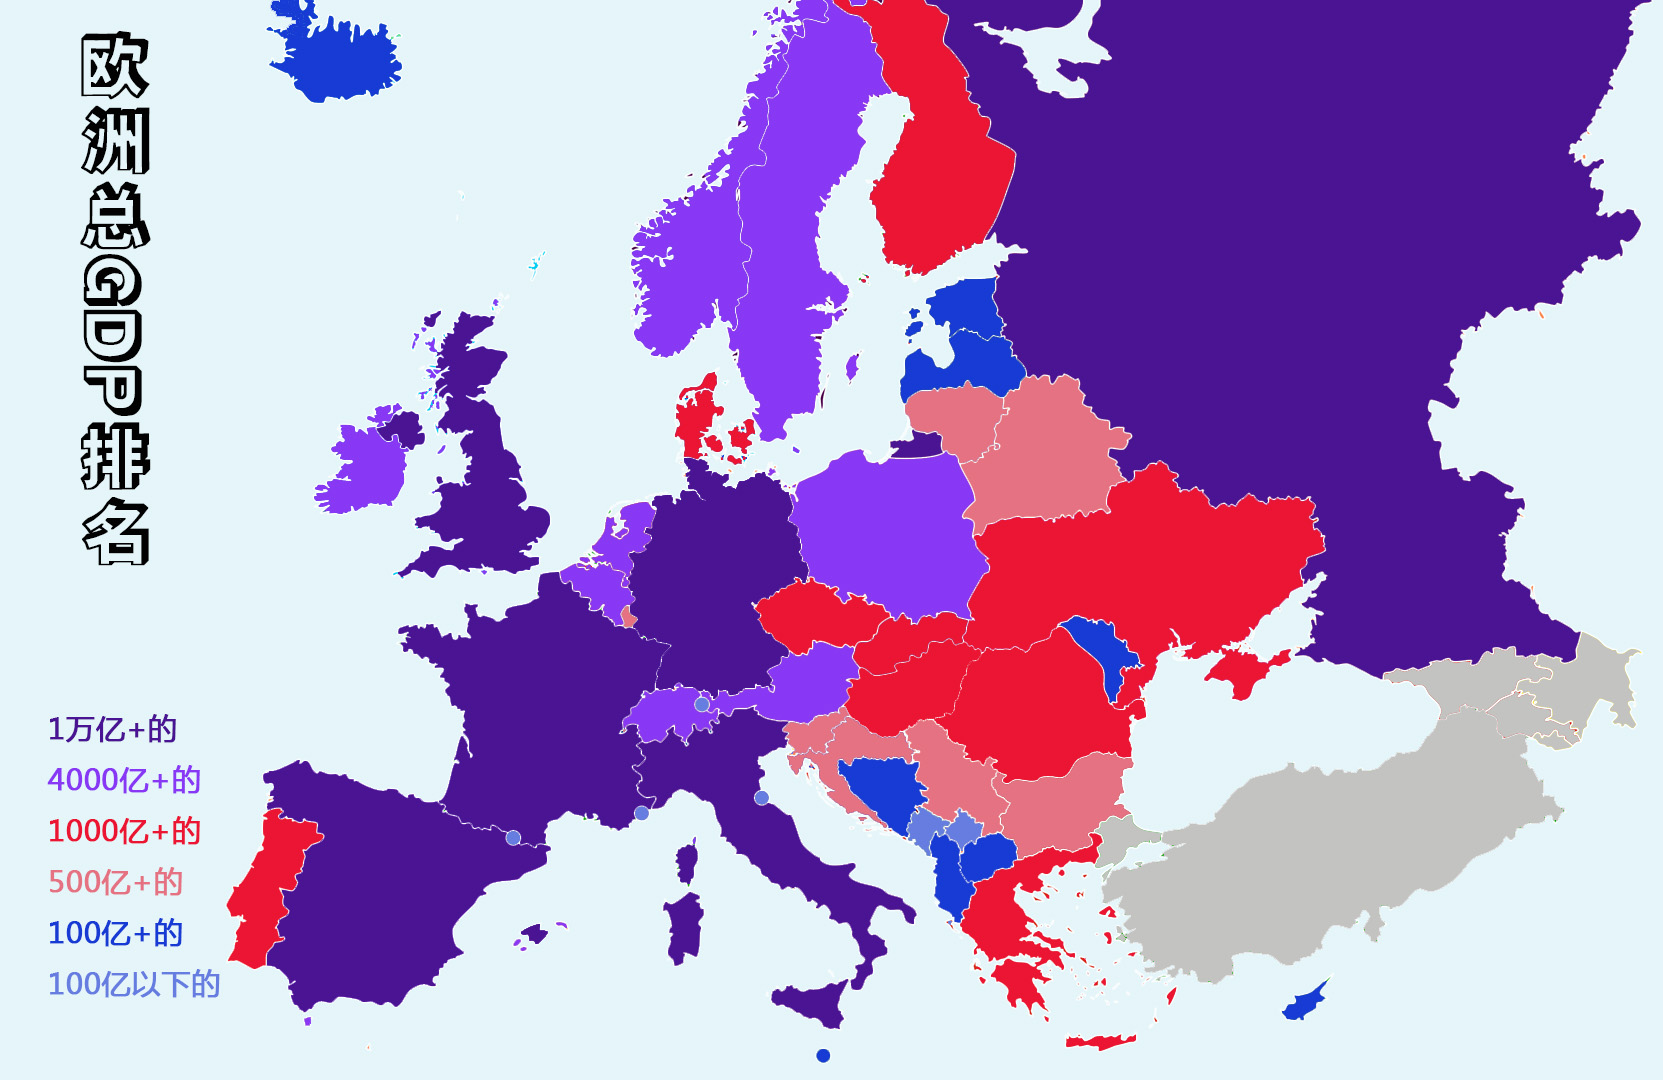 欧洲国家人口数量排名详解，欧洲国家各类排名详解？